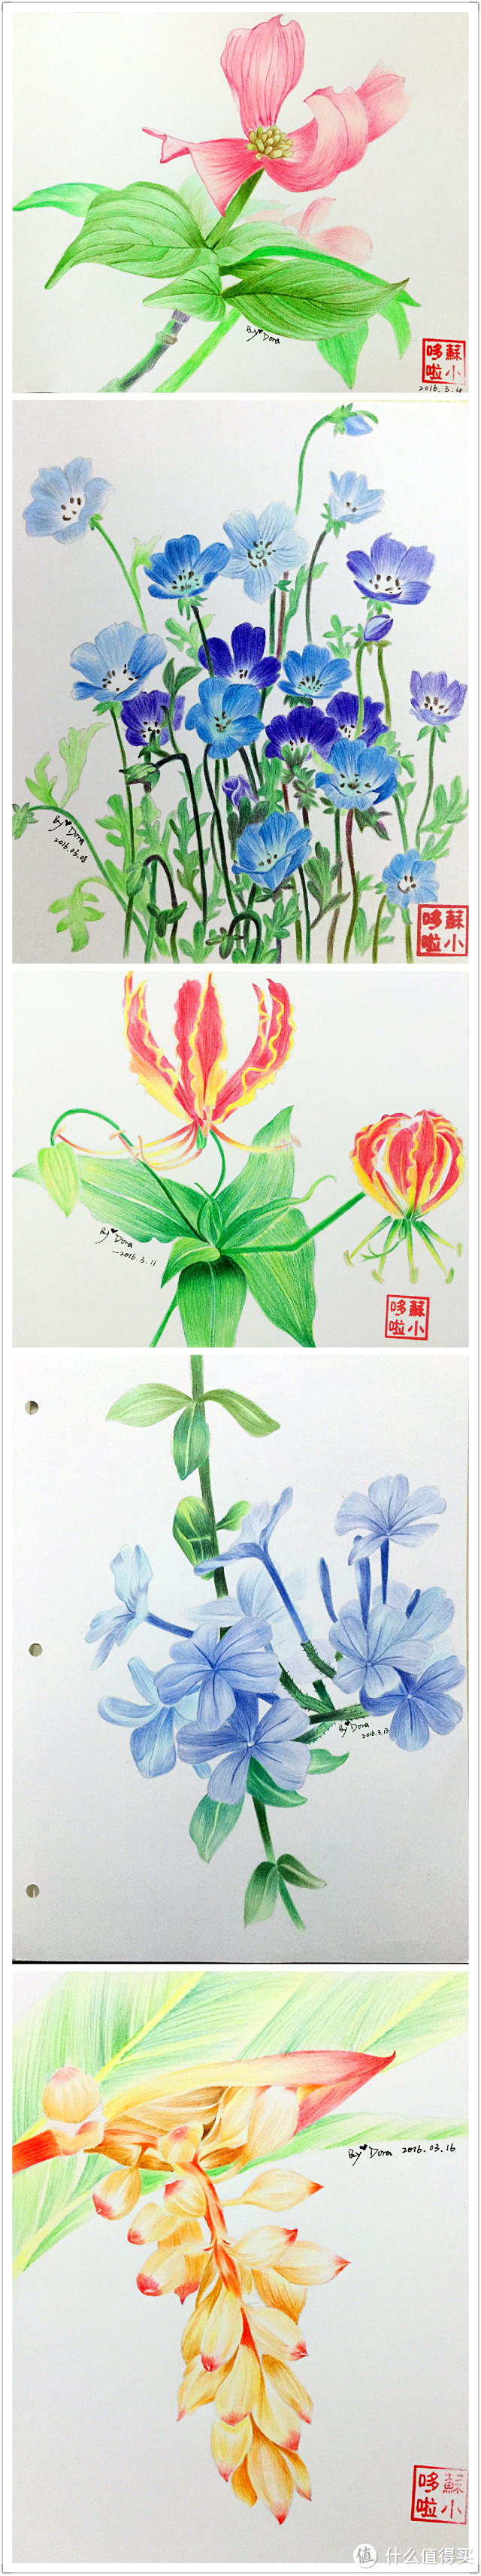 我画完了一整本《花之绘Ⅲ》——我的彩铅画记录